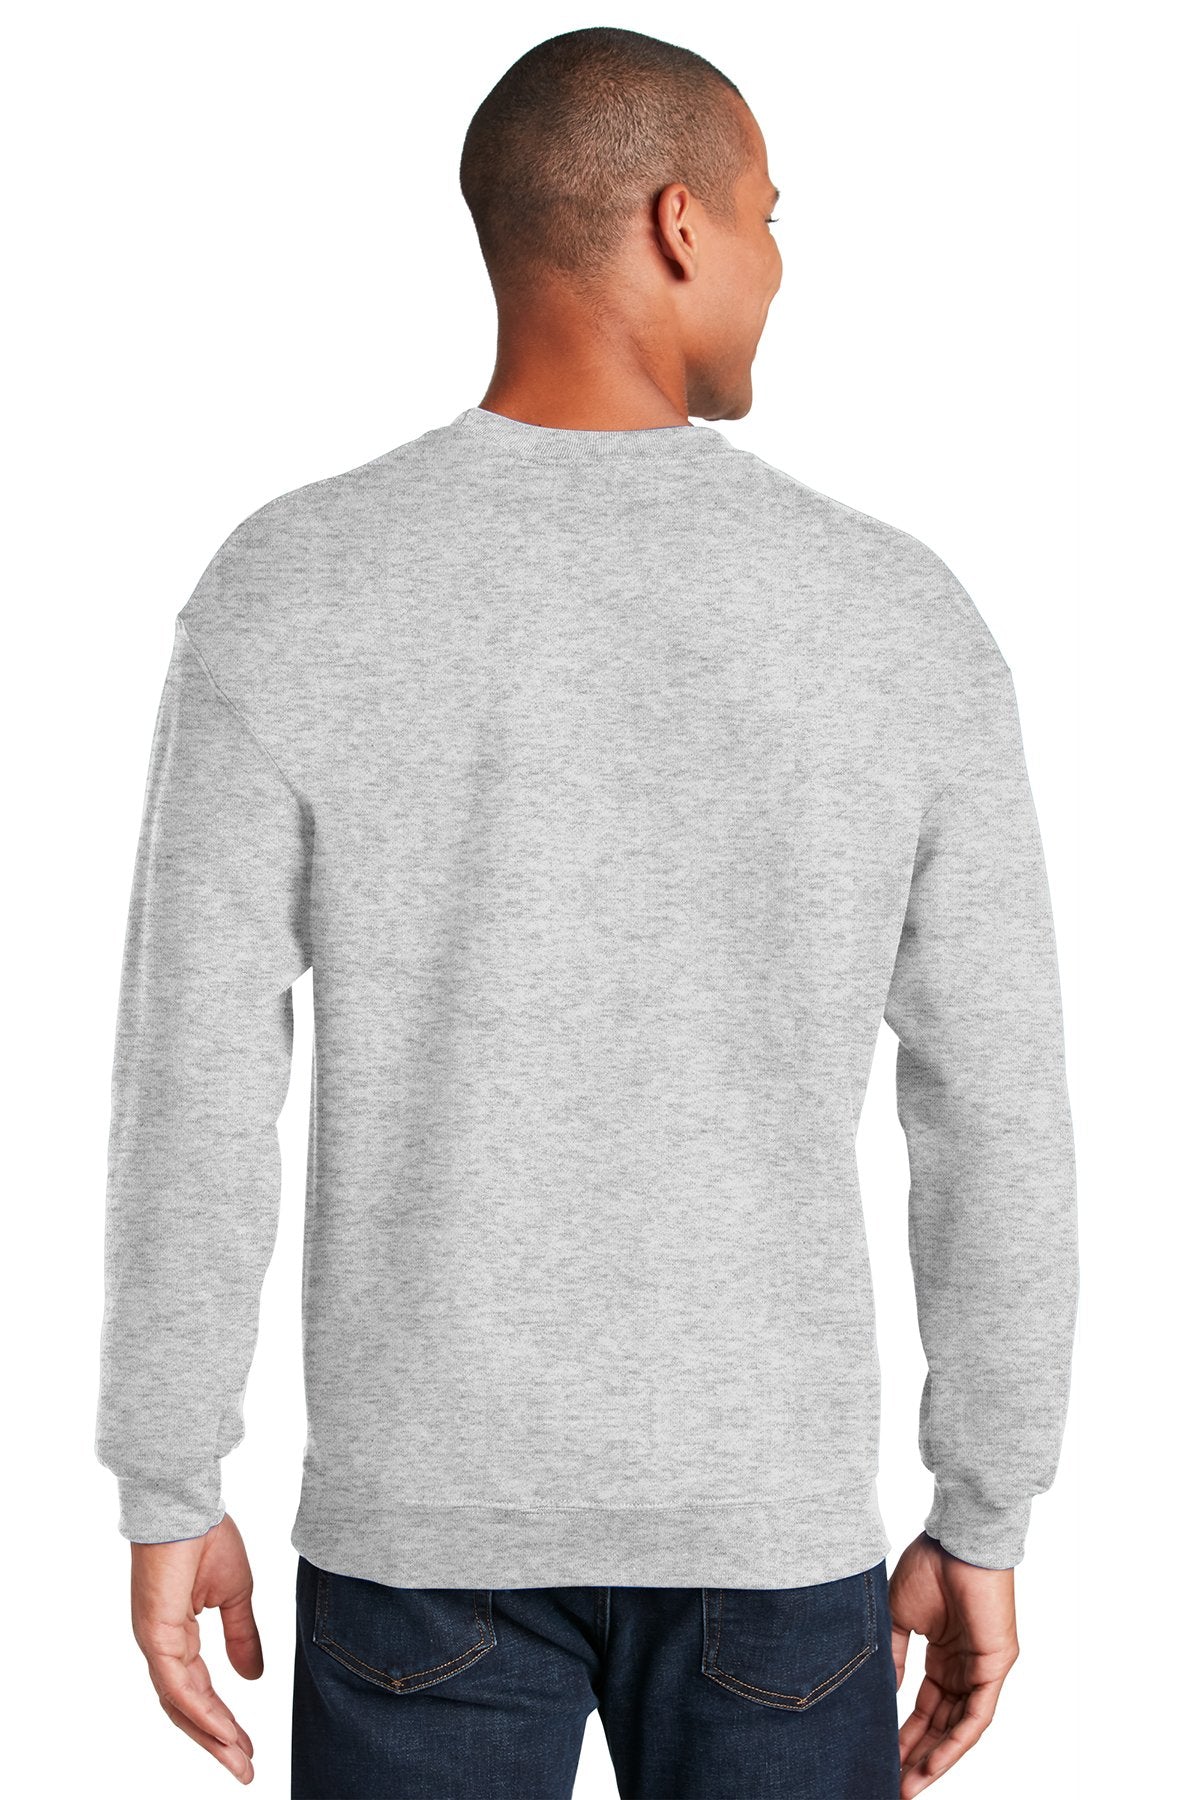 Gildan Heavy Blend Crewneck Sweatshirt in Ash, with a custom logo